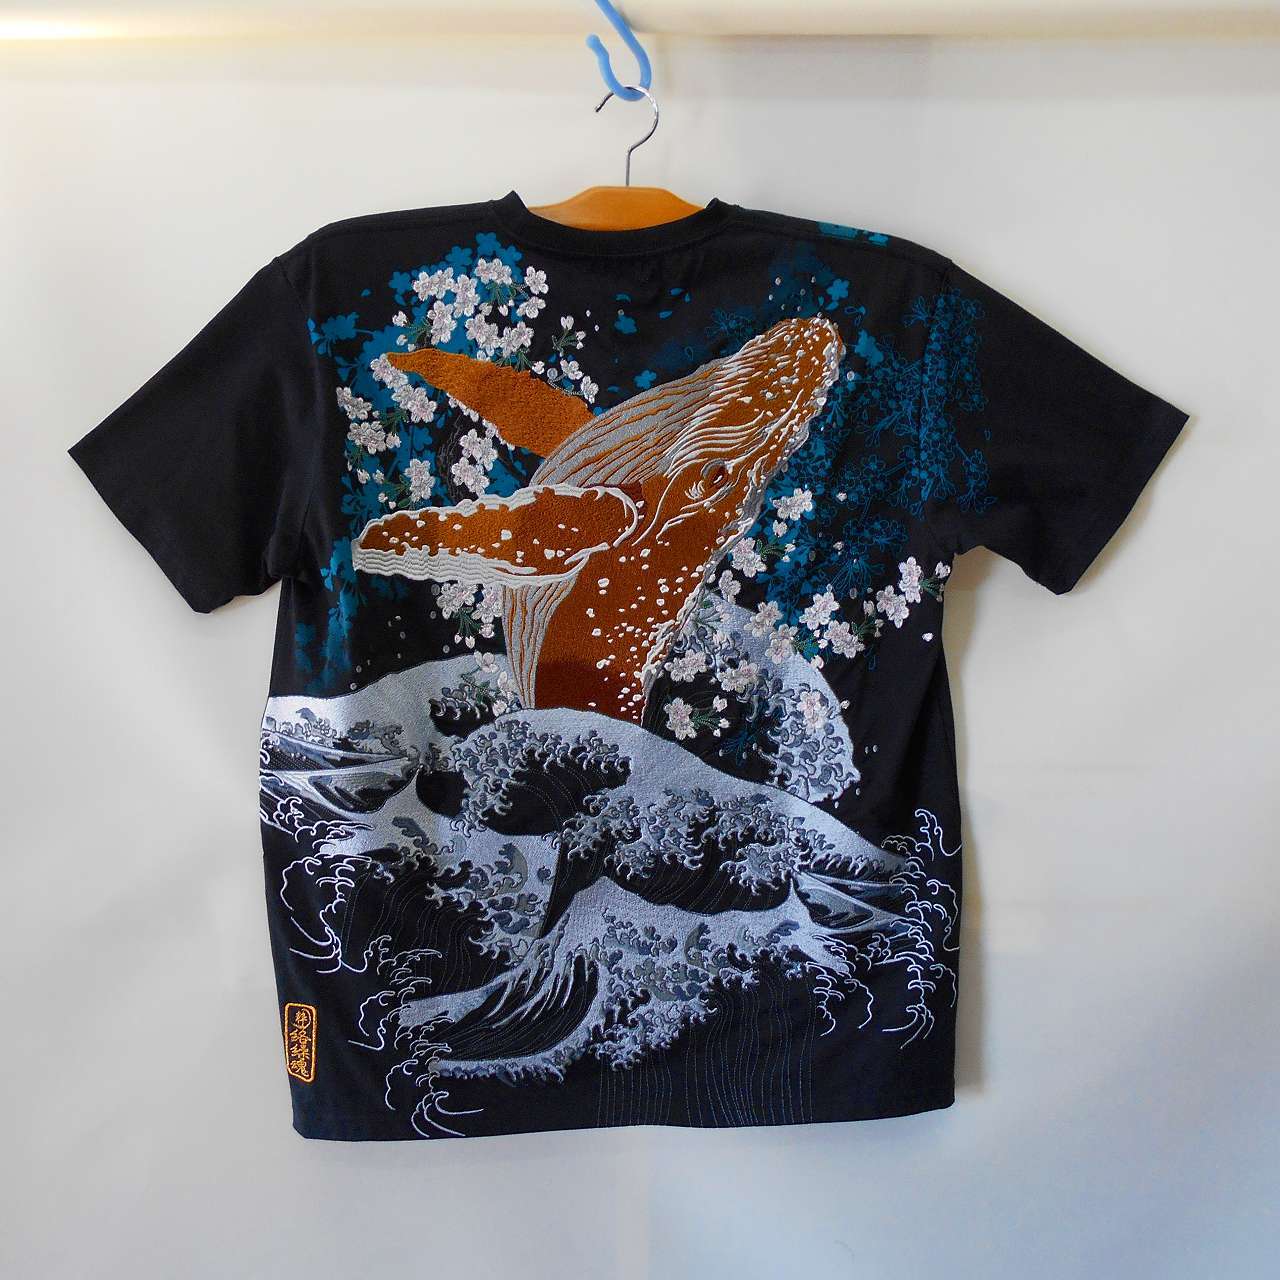 和柄半袖Tシャツ 金のクジラ T-shirt with whale embroidery | あさひ ...